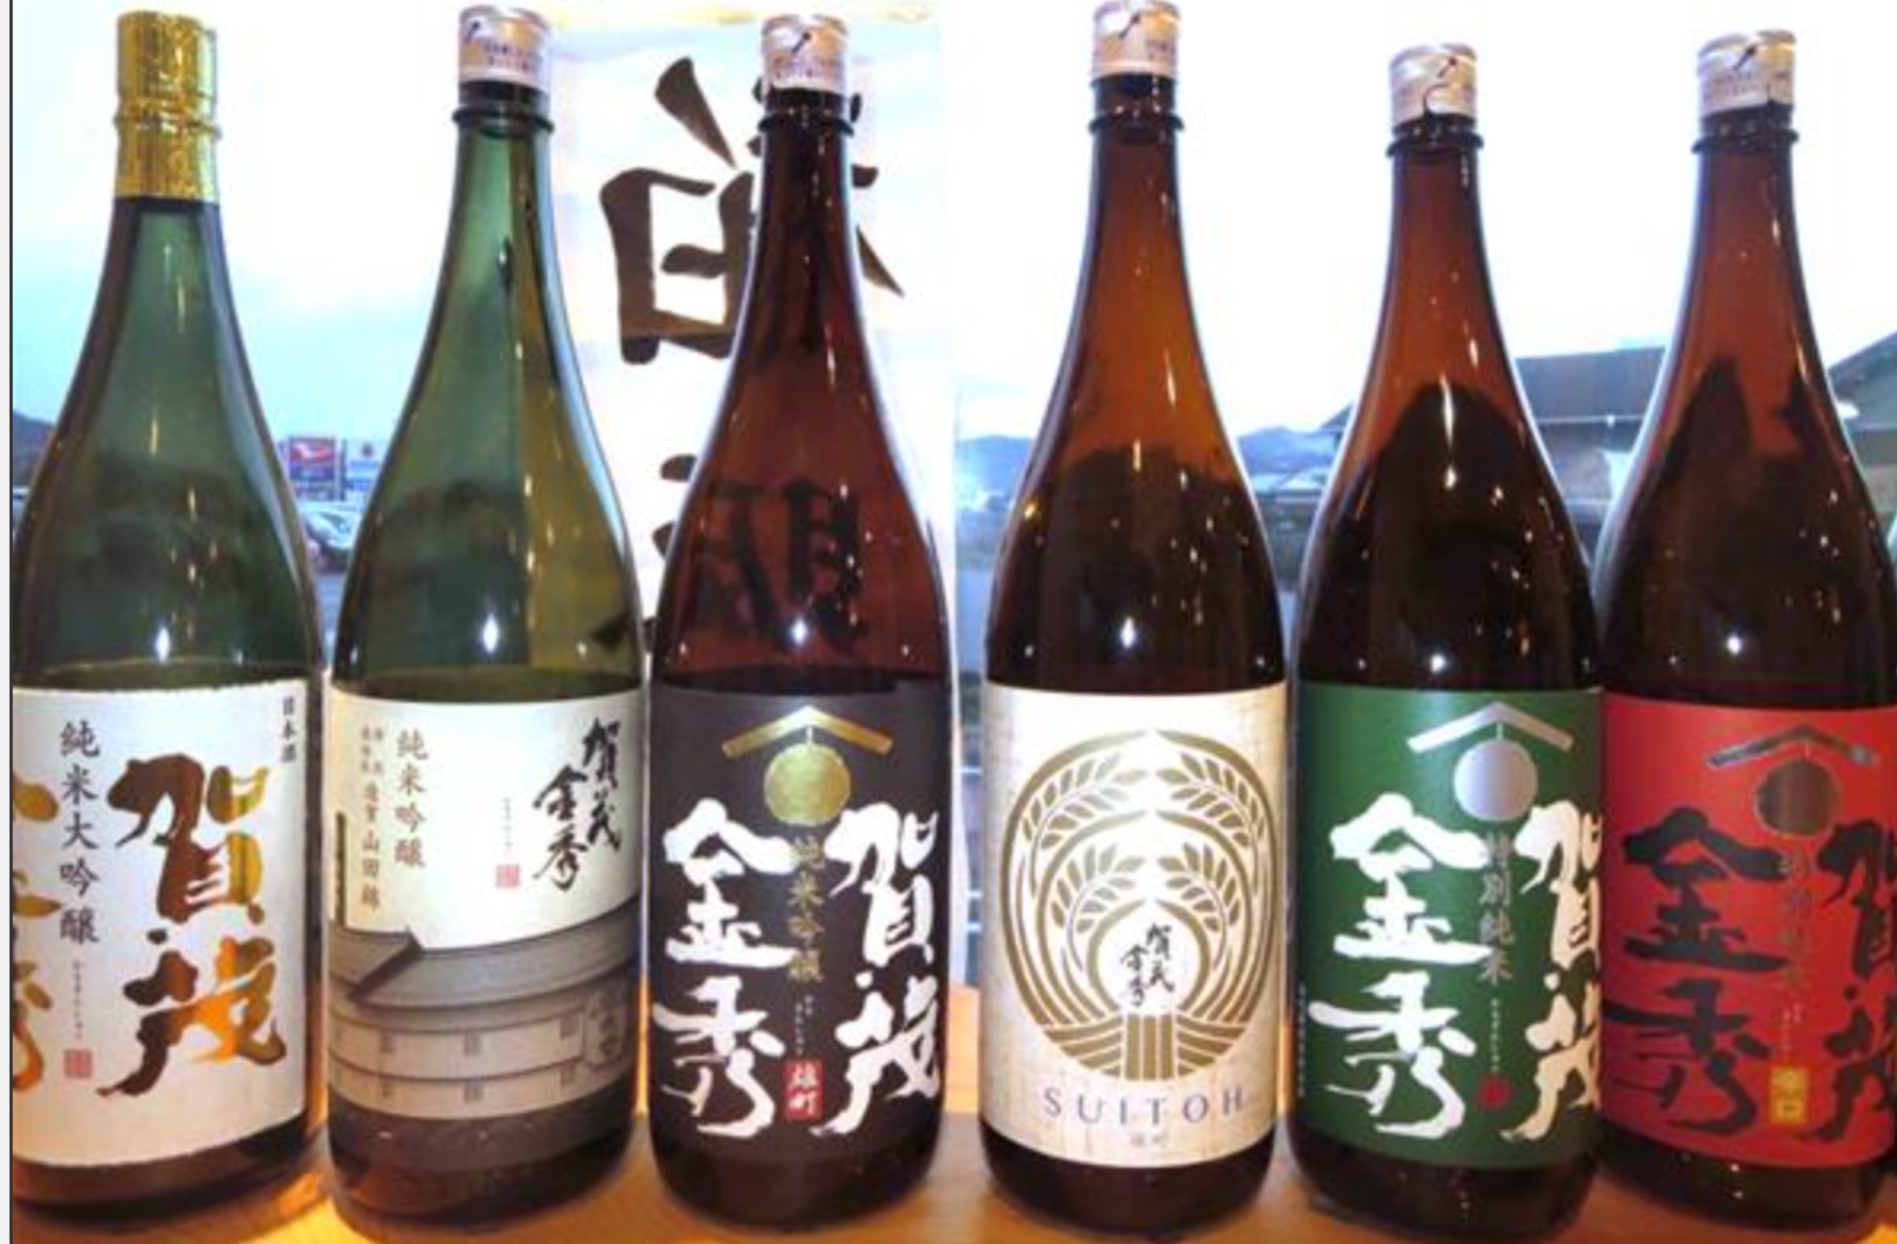 What kind of sake brand is Kamokinnshu? 賀茂金秀